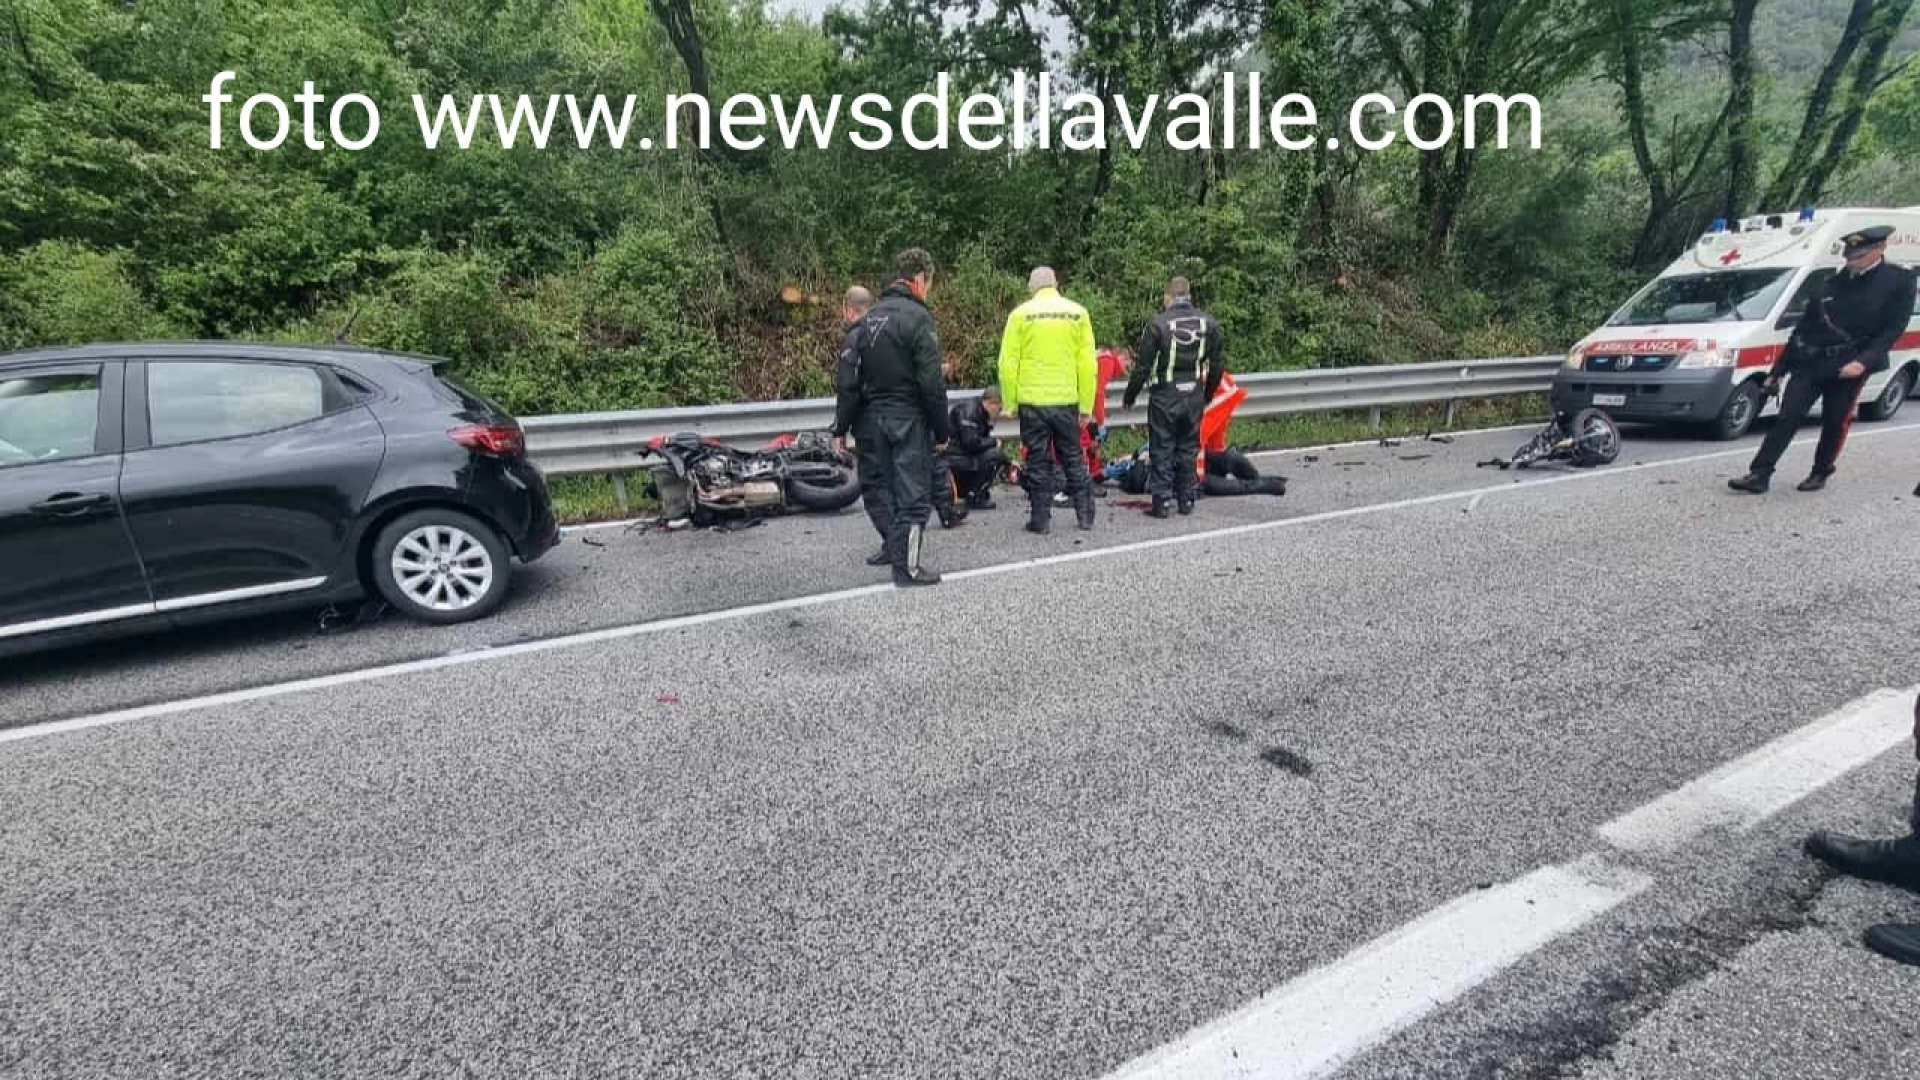 Colli a Volturno: scontro auto moto sulla statale 158 "Valle del Volturno". Giovane centauro portato in ospedale e moto spezzata a metà.